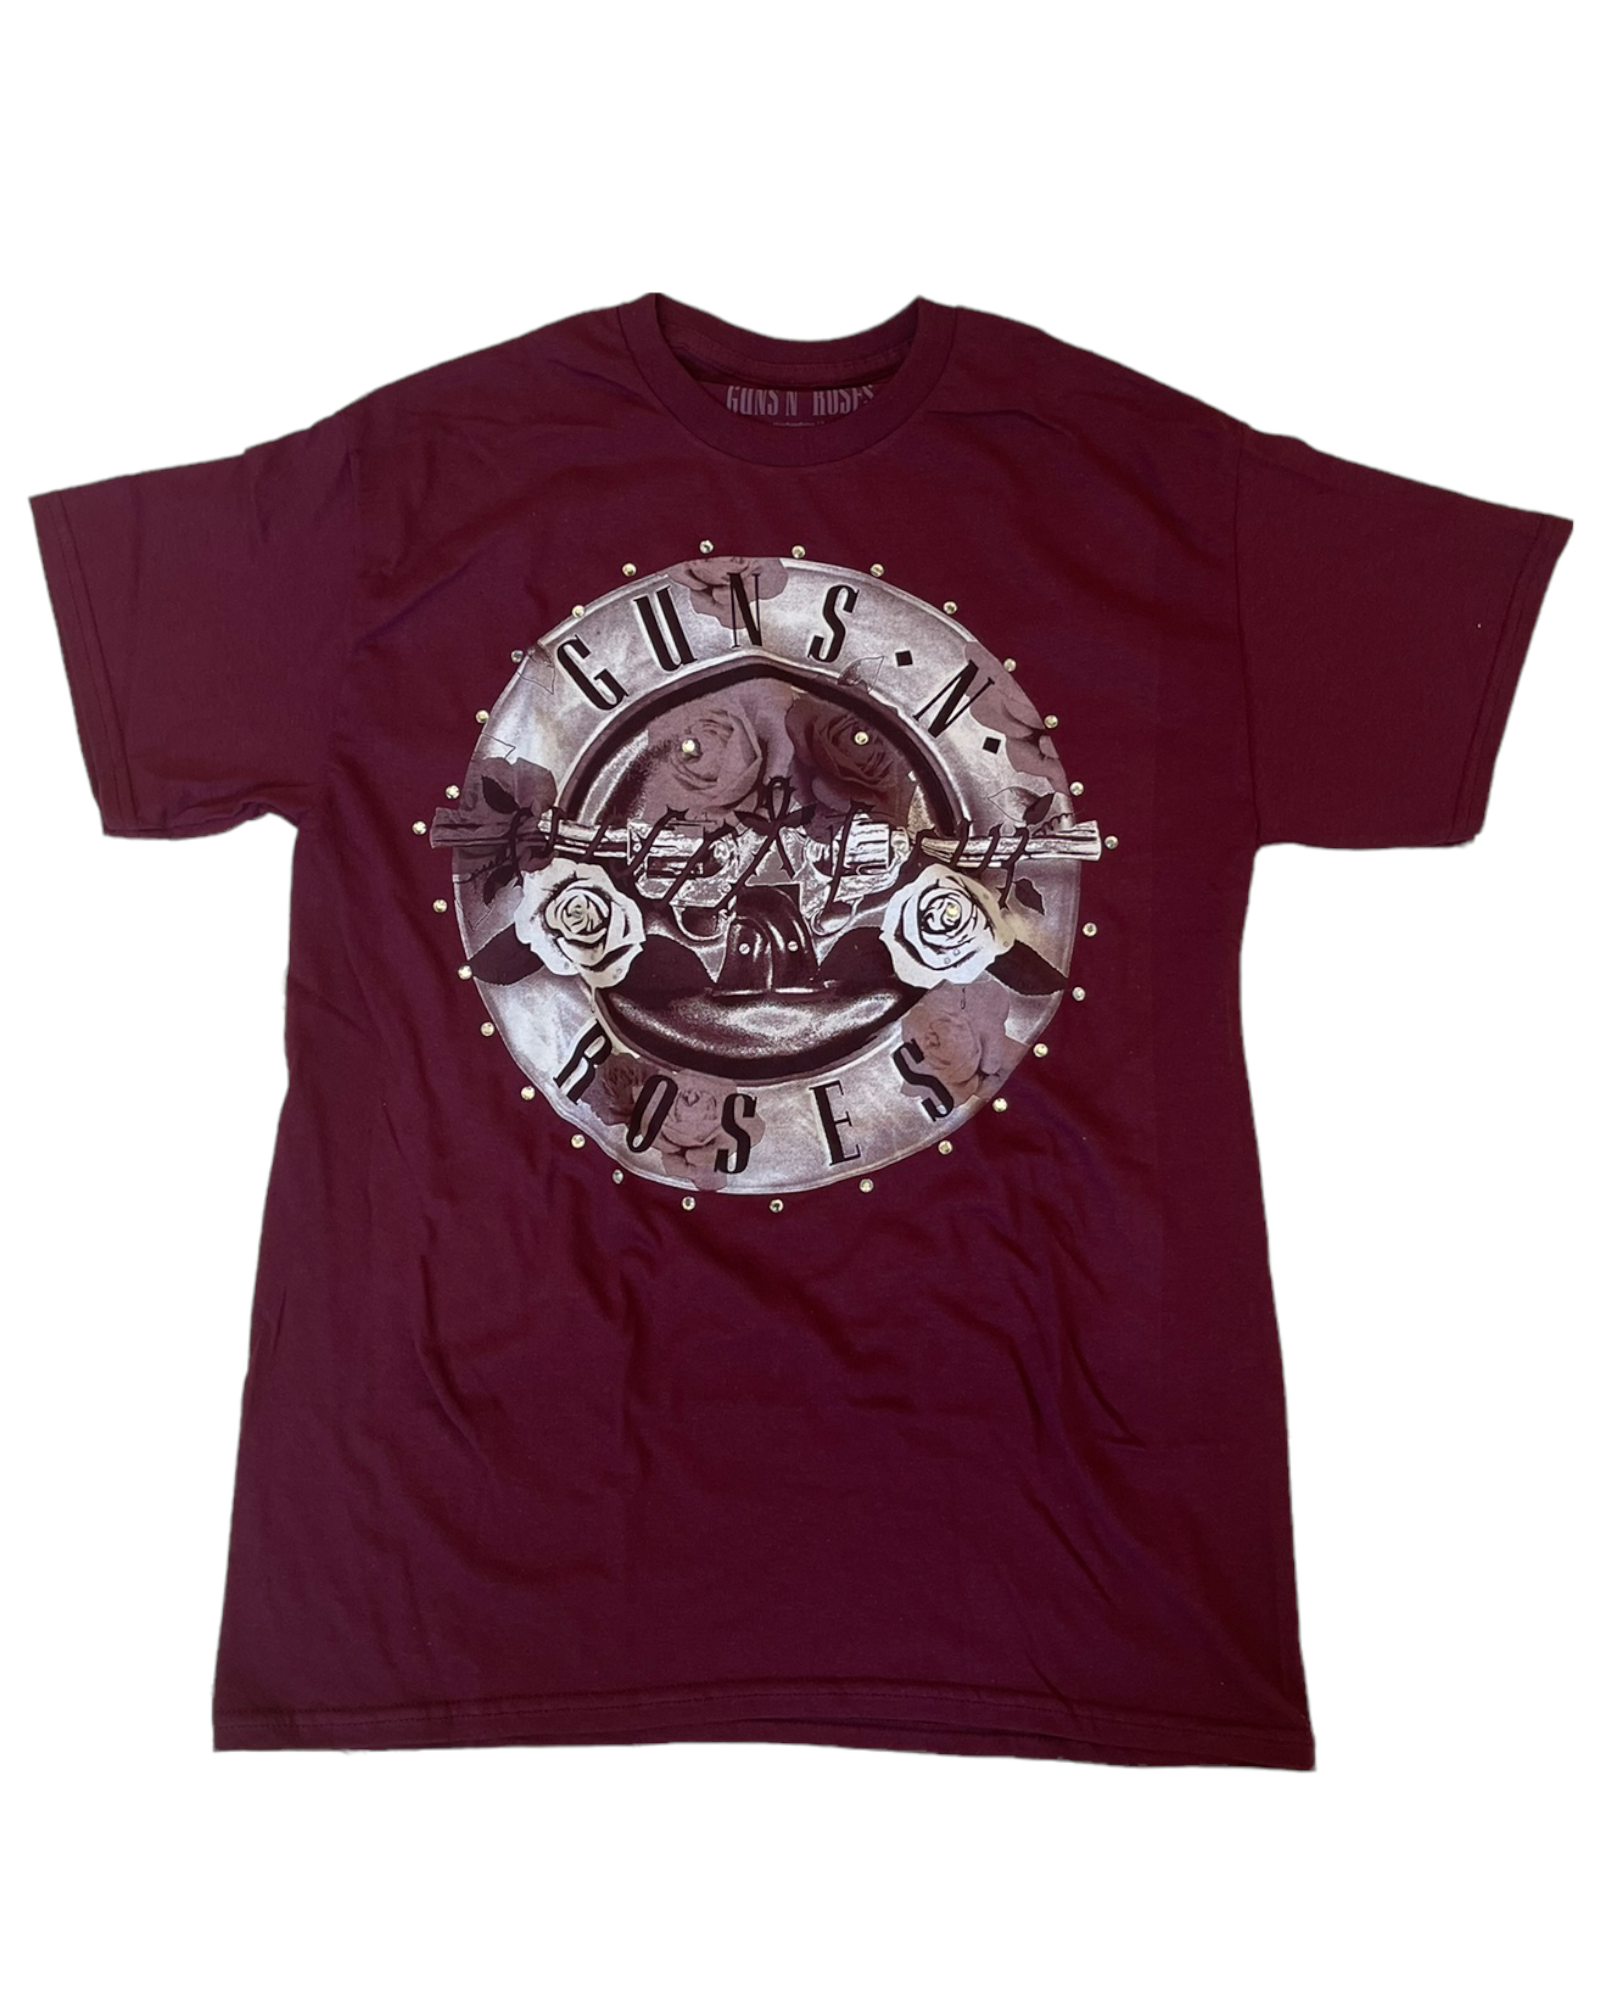 cutandcropped Grateful Dead Summer Tour T-Shirt Medium